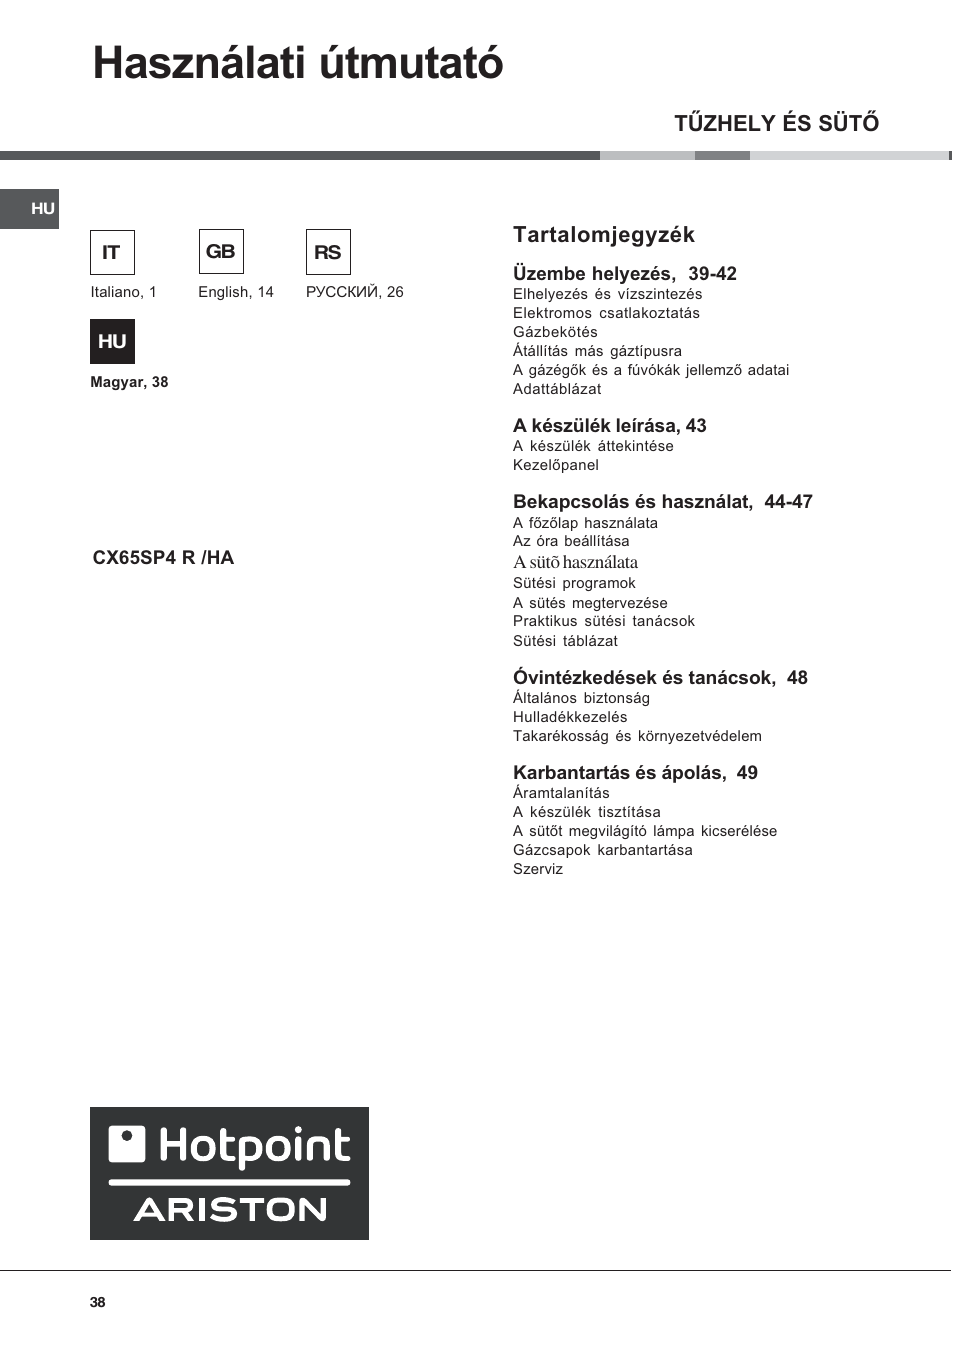 Használati útmutató, Tûzhely és sütõ, Tartalomjegyzék | Hotpoint Ariston CX  65 SP4 R/HA User Manual | Page 38 / 52